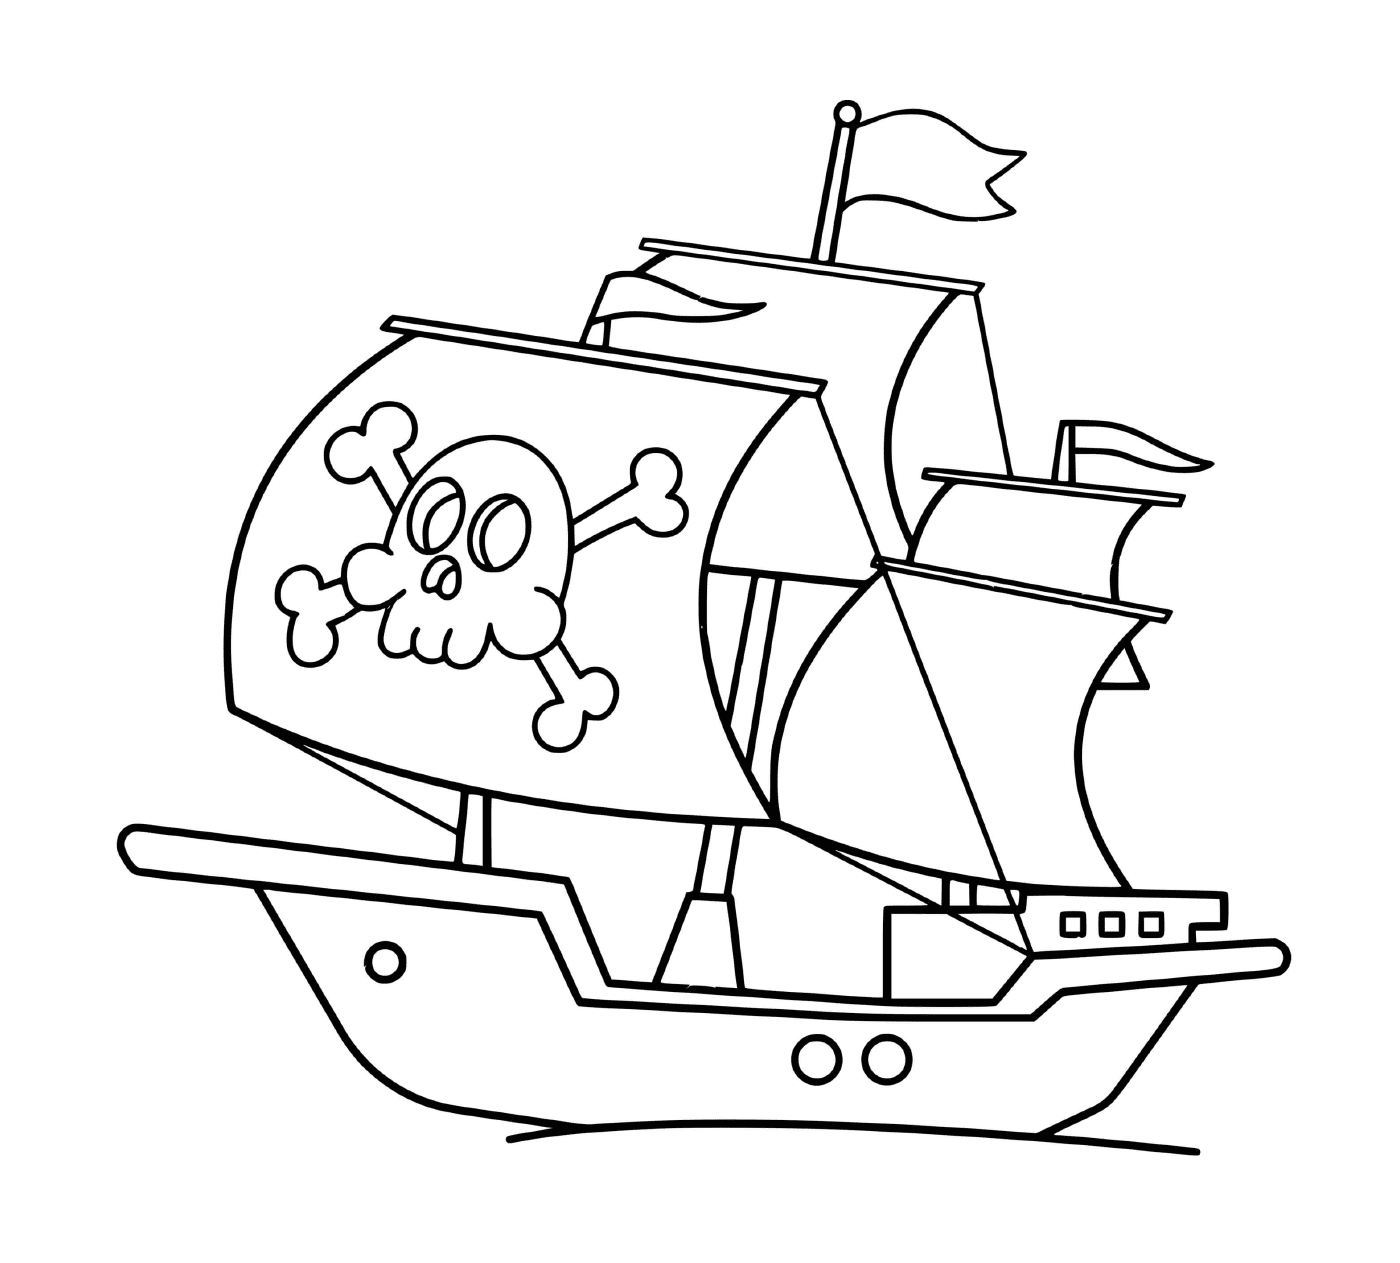  Ein einfaches Piratenboot 